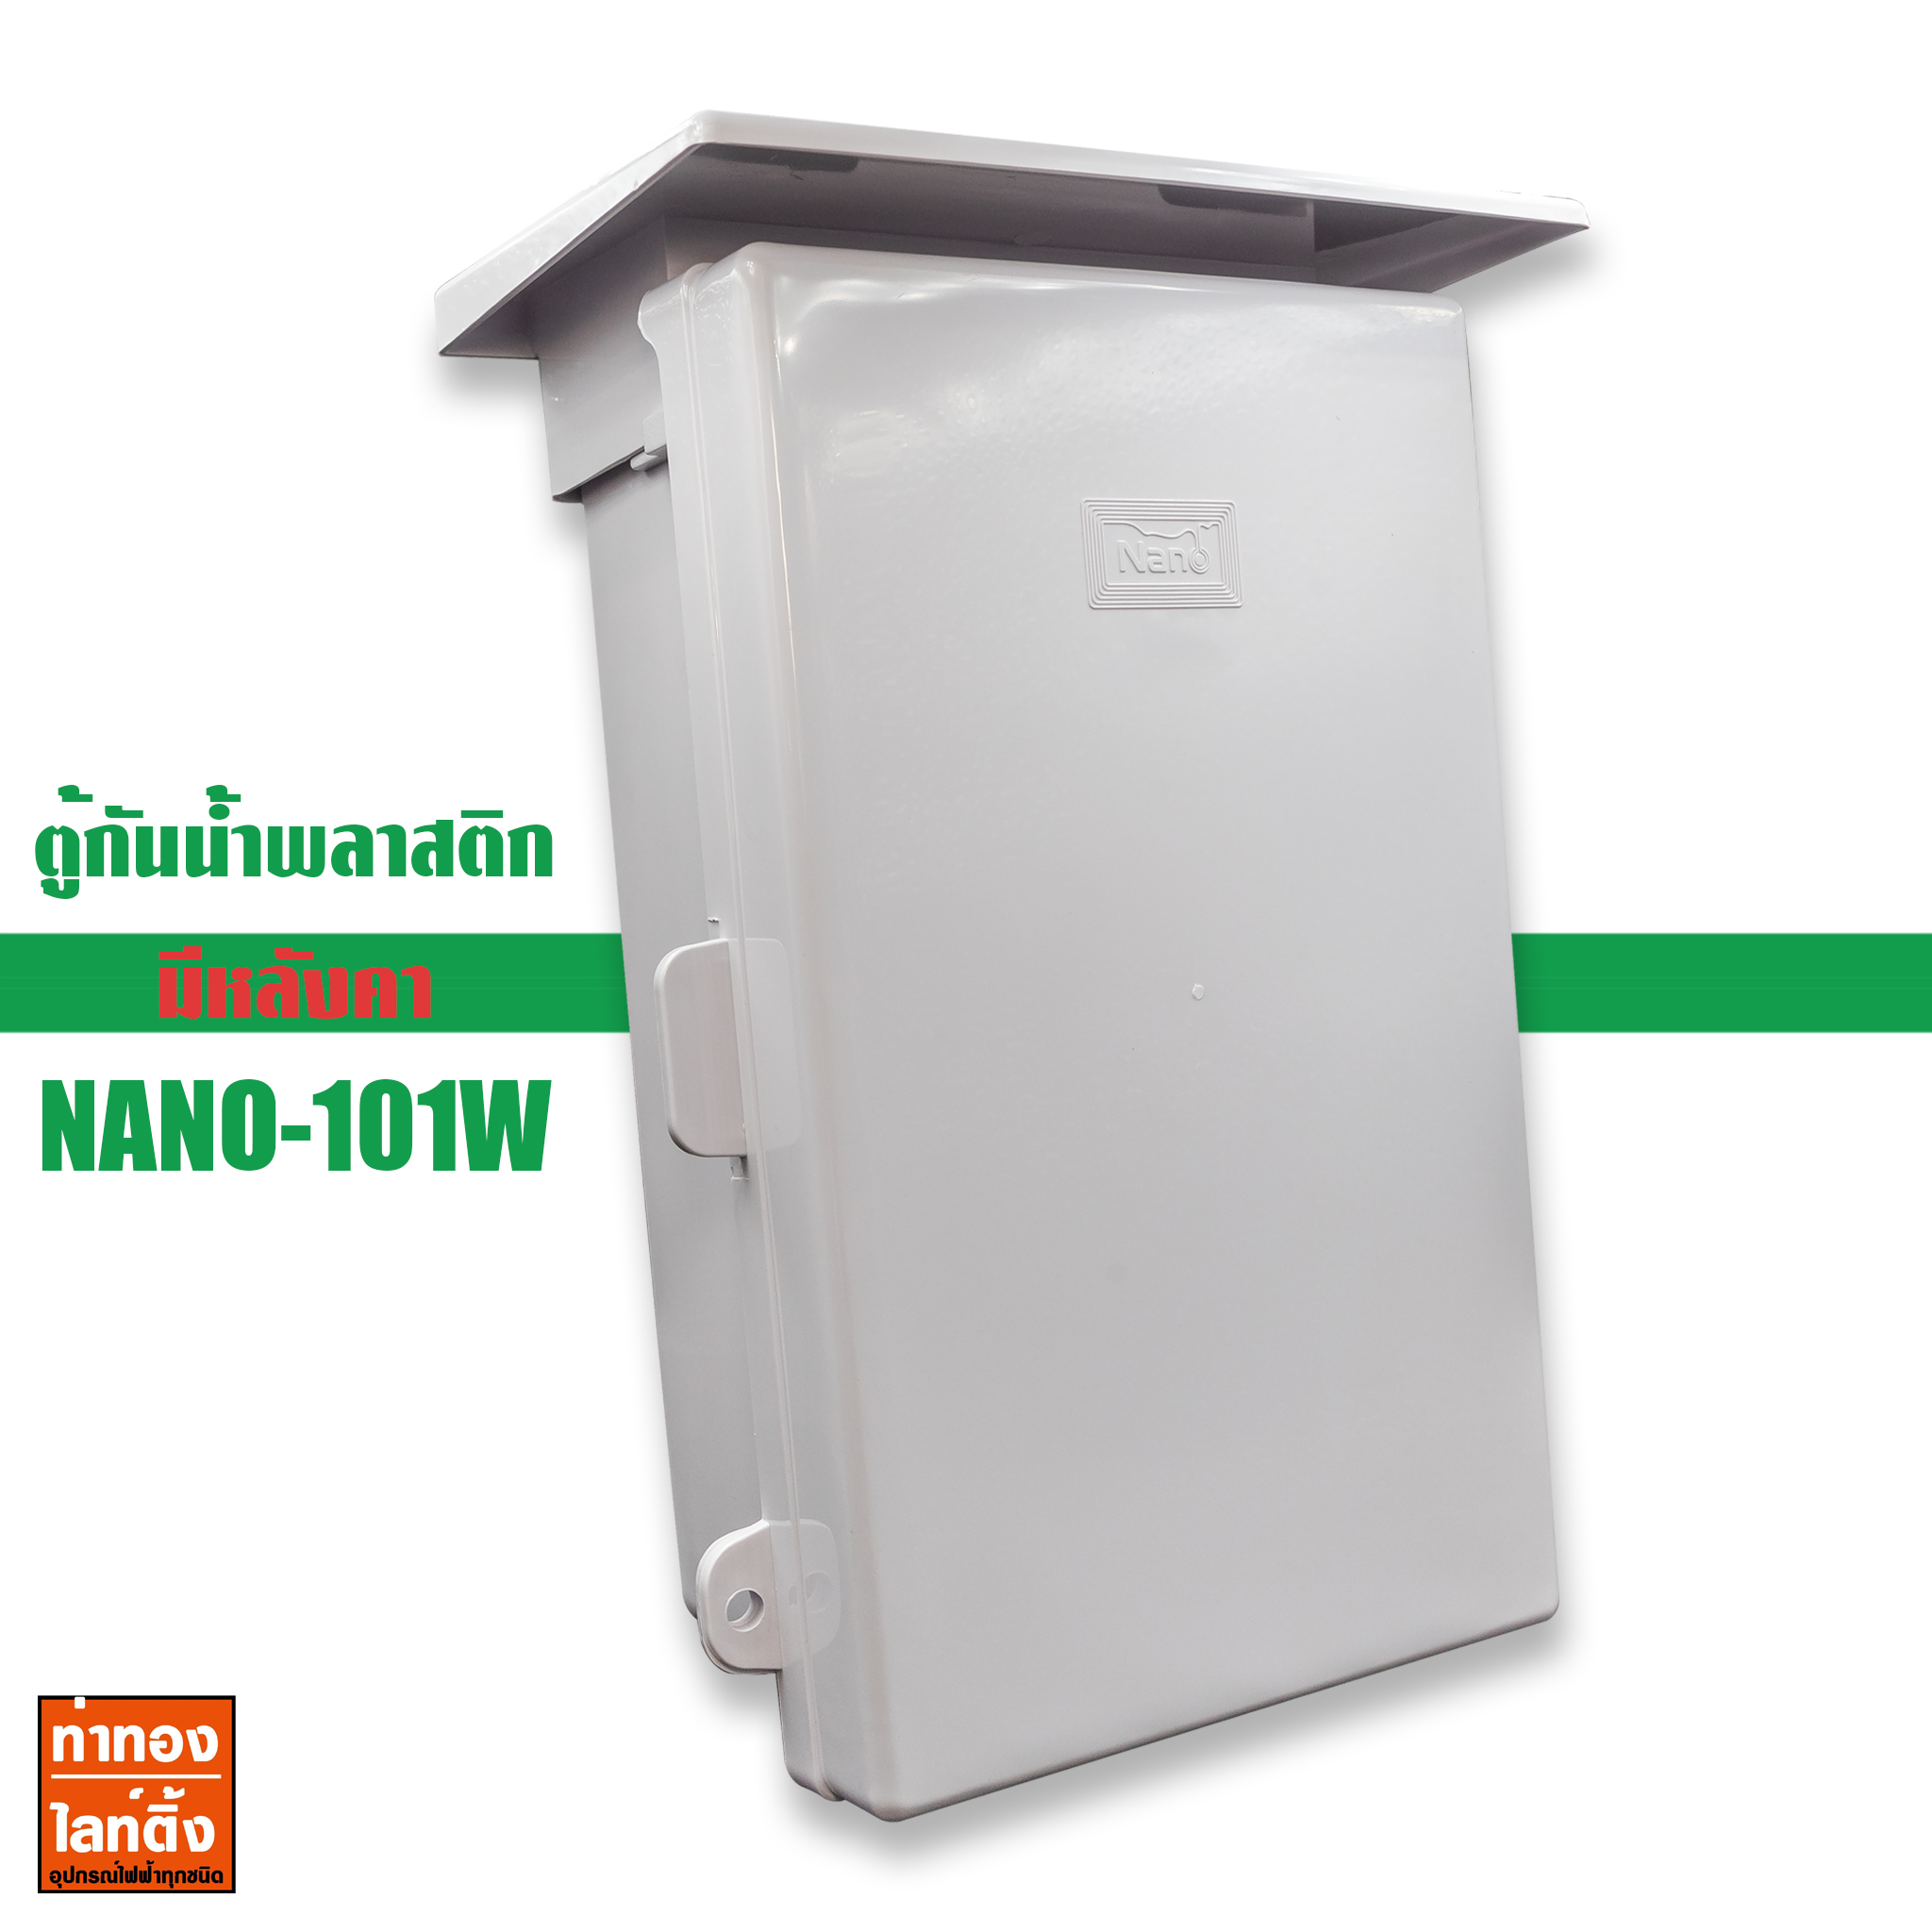 ตู้กันน้ำพลาสติก NANO-101W นาโน Electric Enclosure Water Proof Box Nano-101w